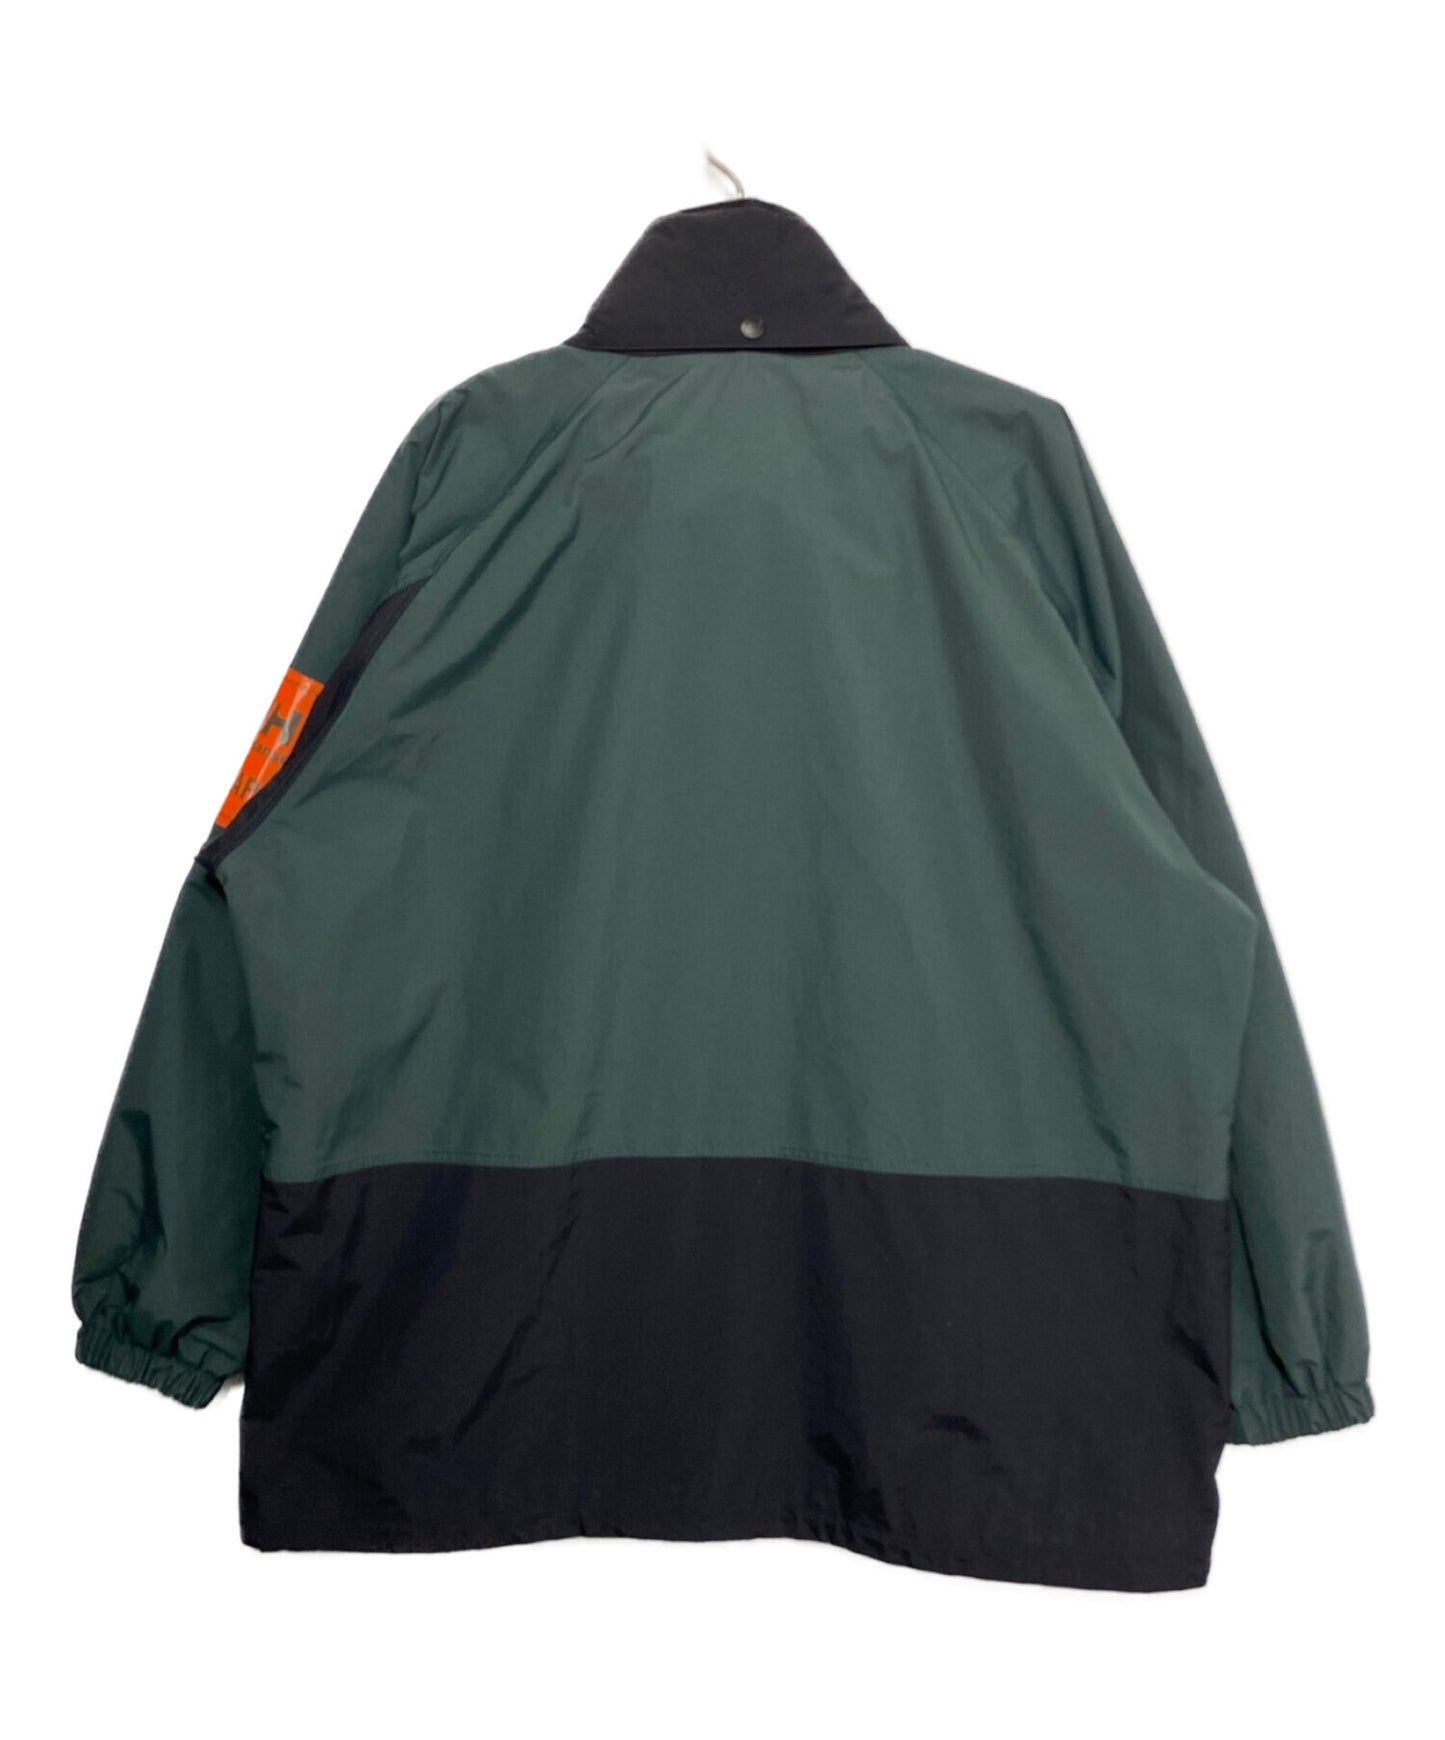 wtaps bow jacket hv12000w